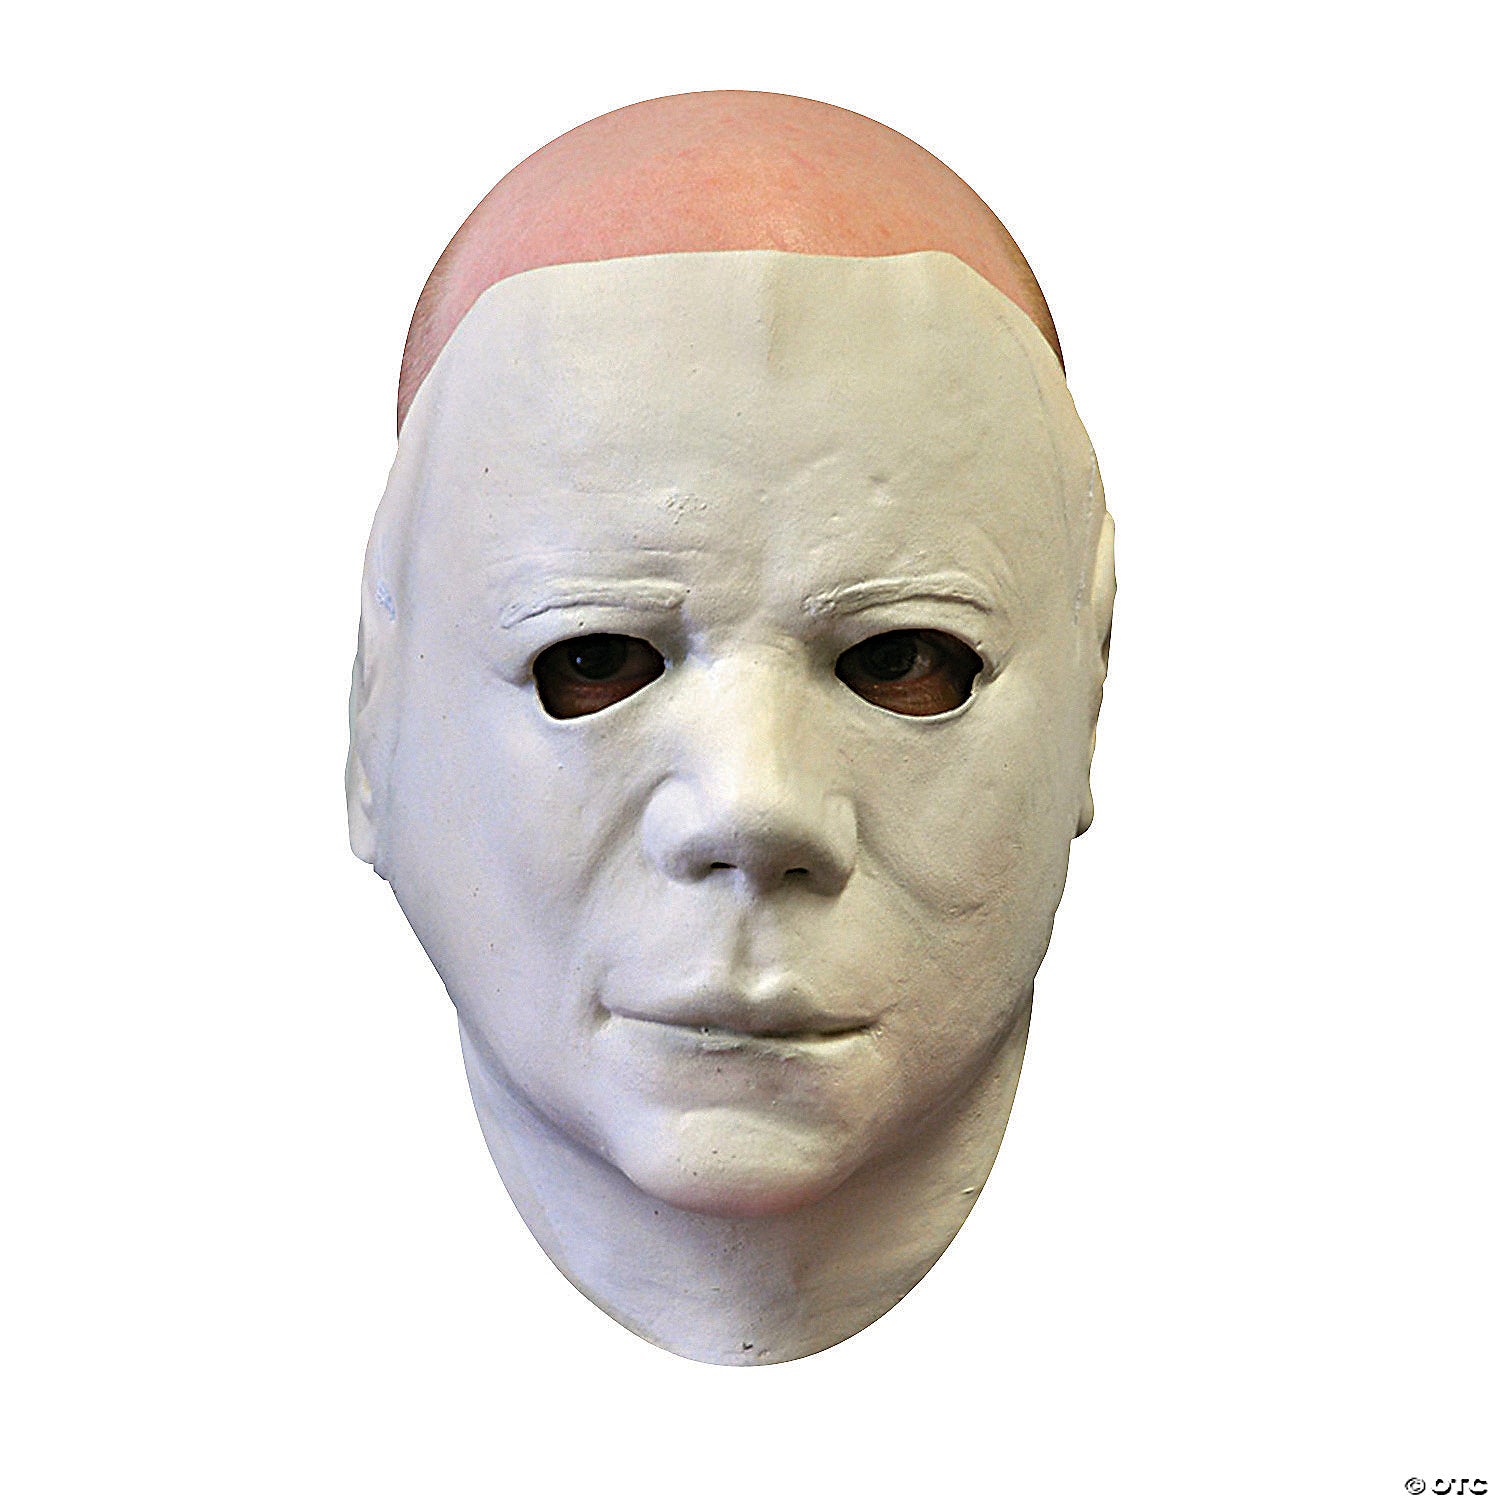 Adult Mask Halloween II